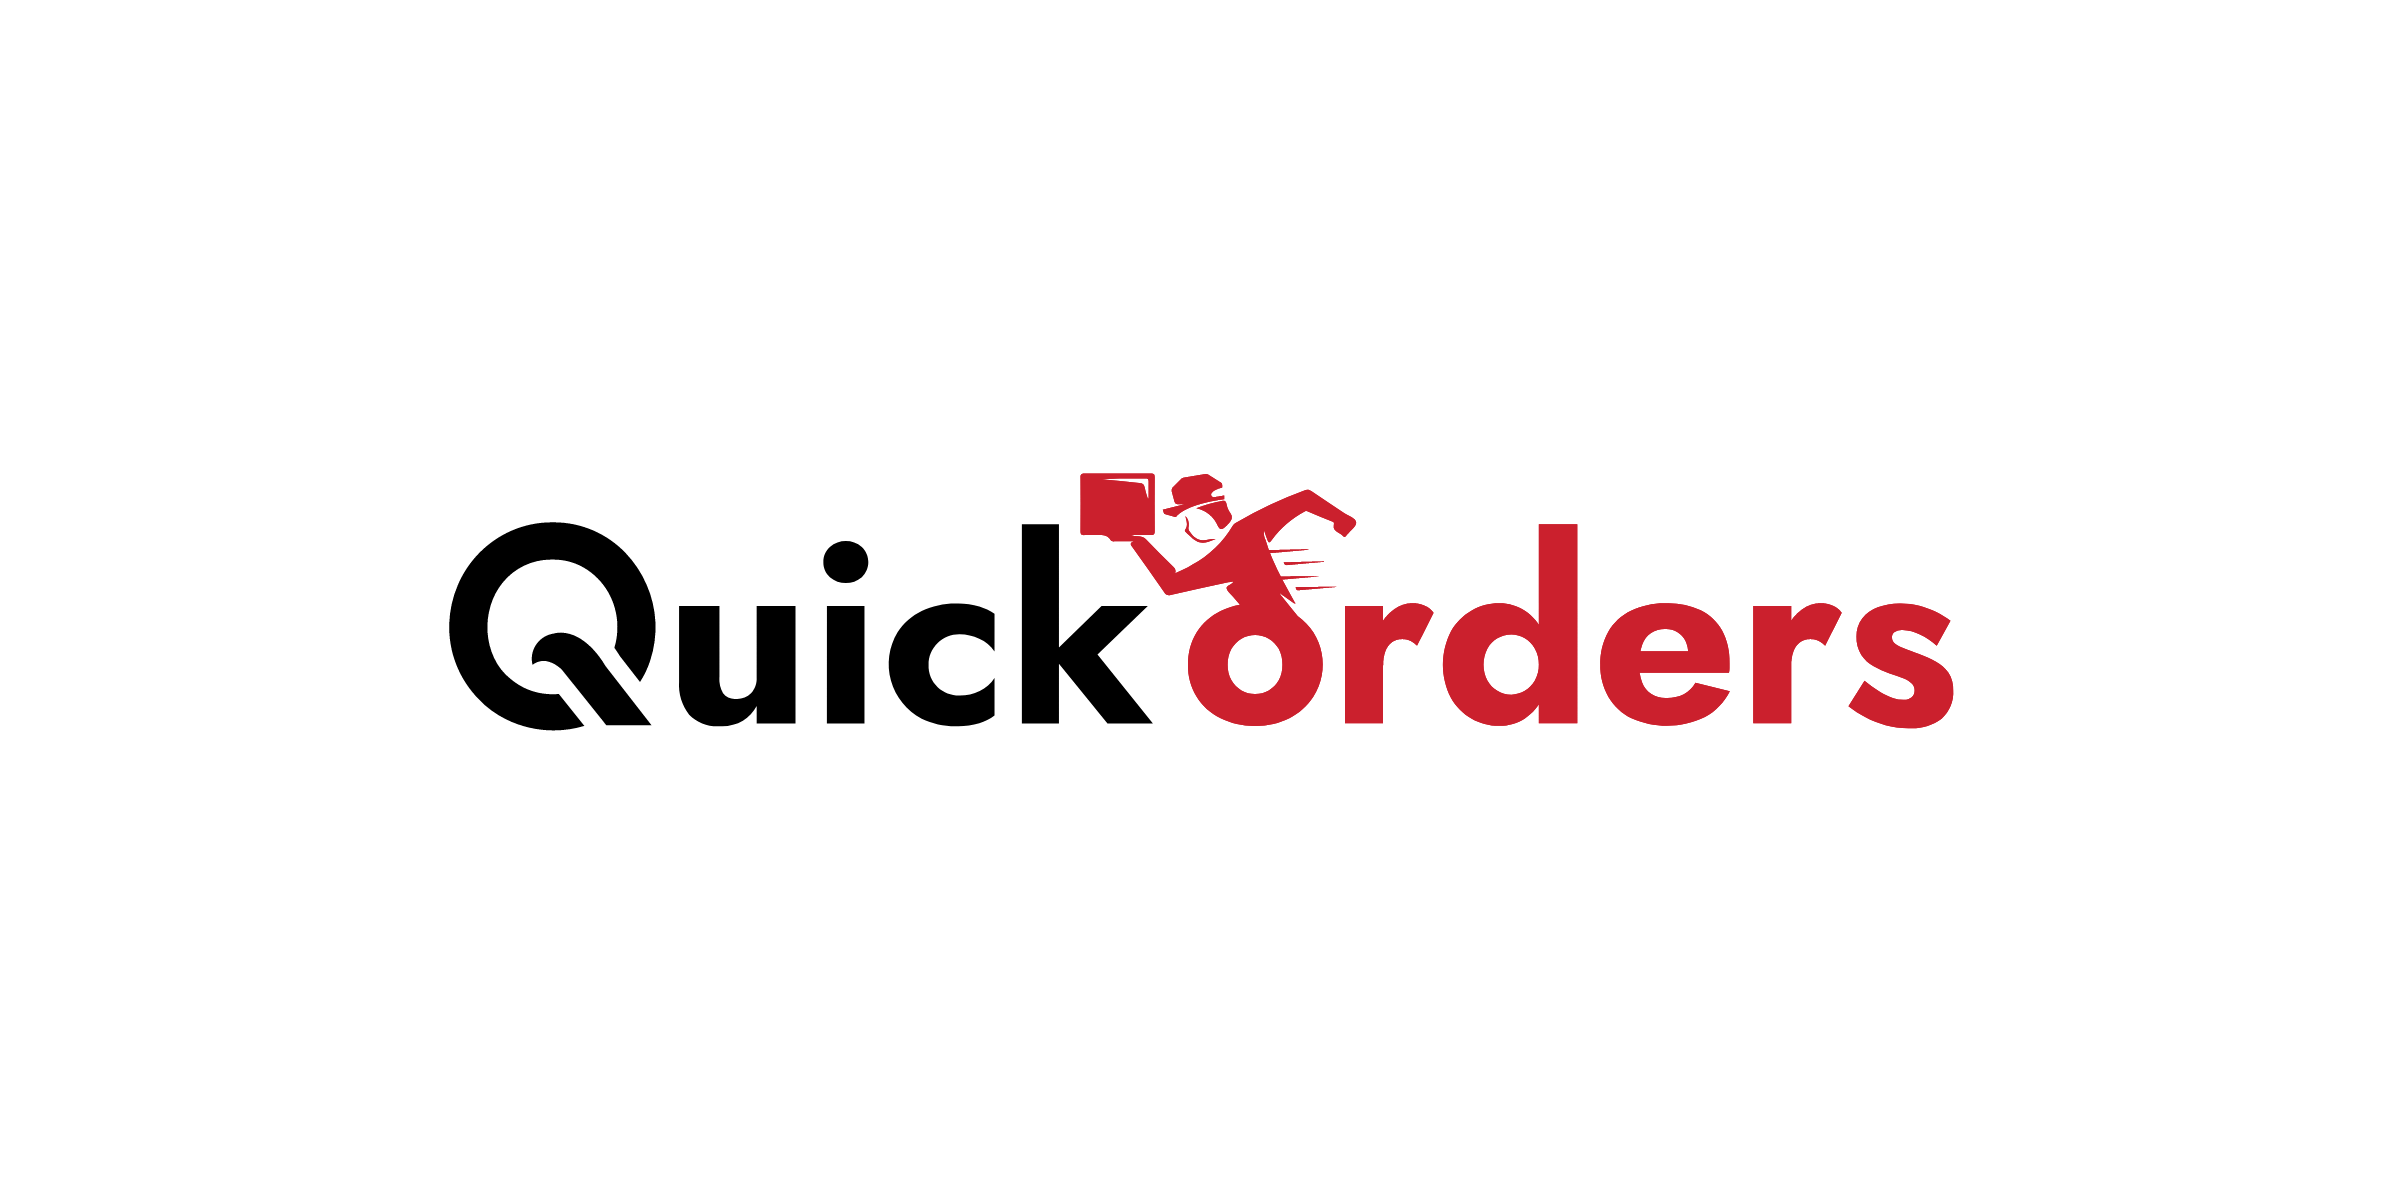 (c) Quick-works.com